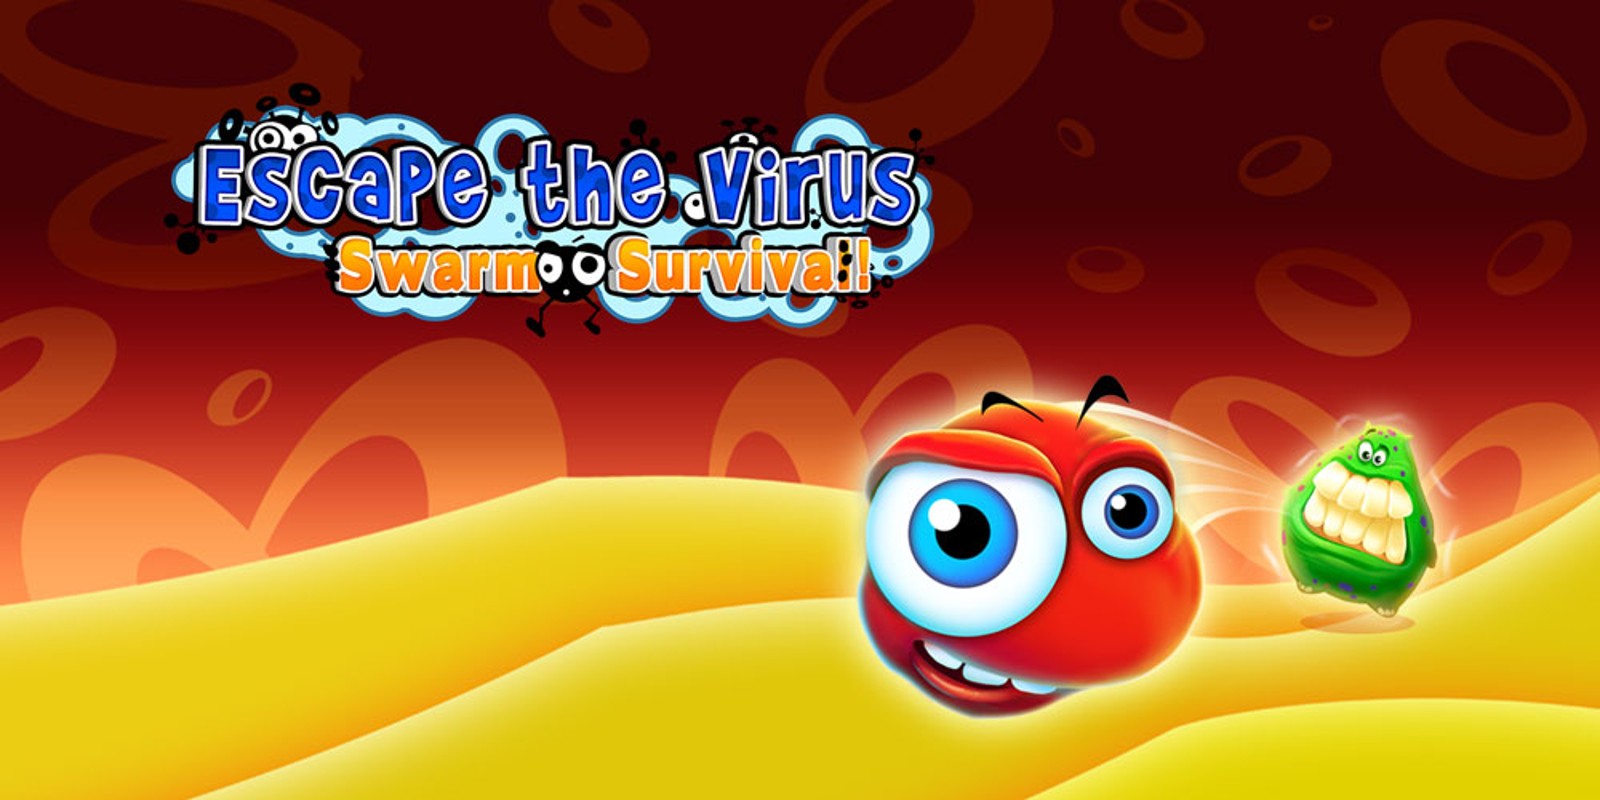 Escape the Virus: Swarm Survival